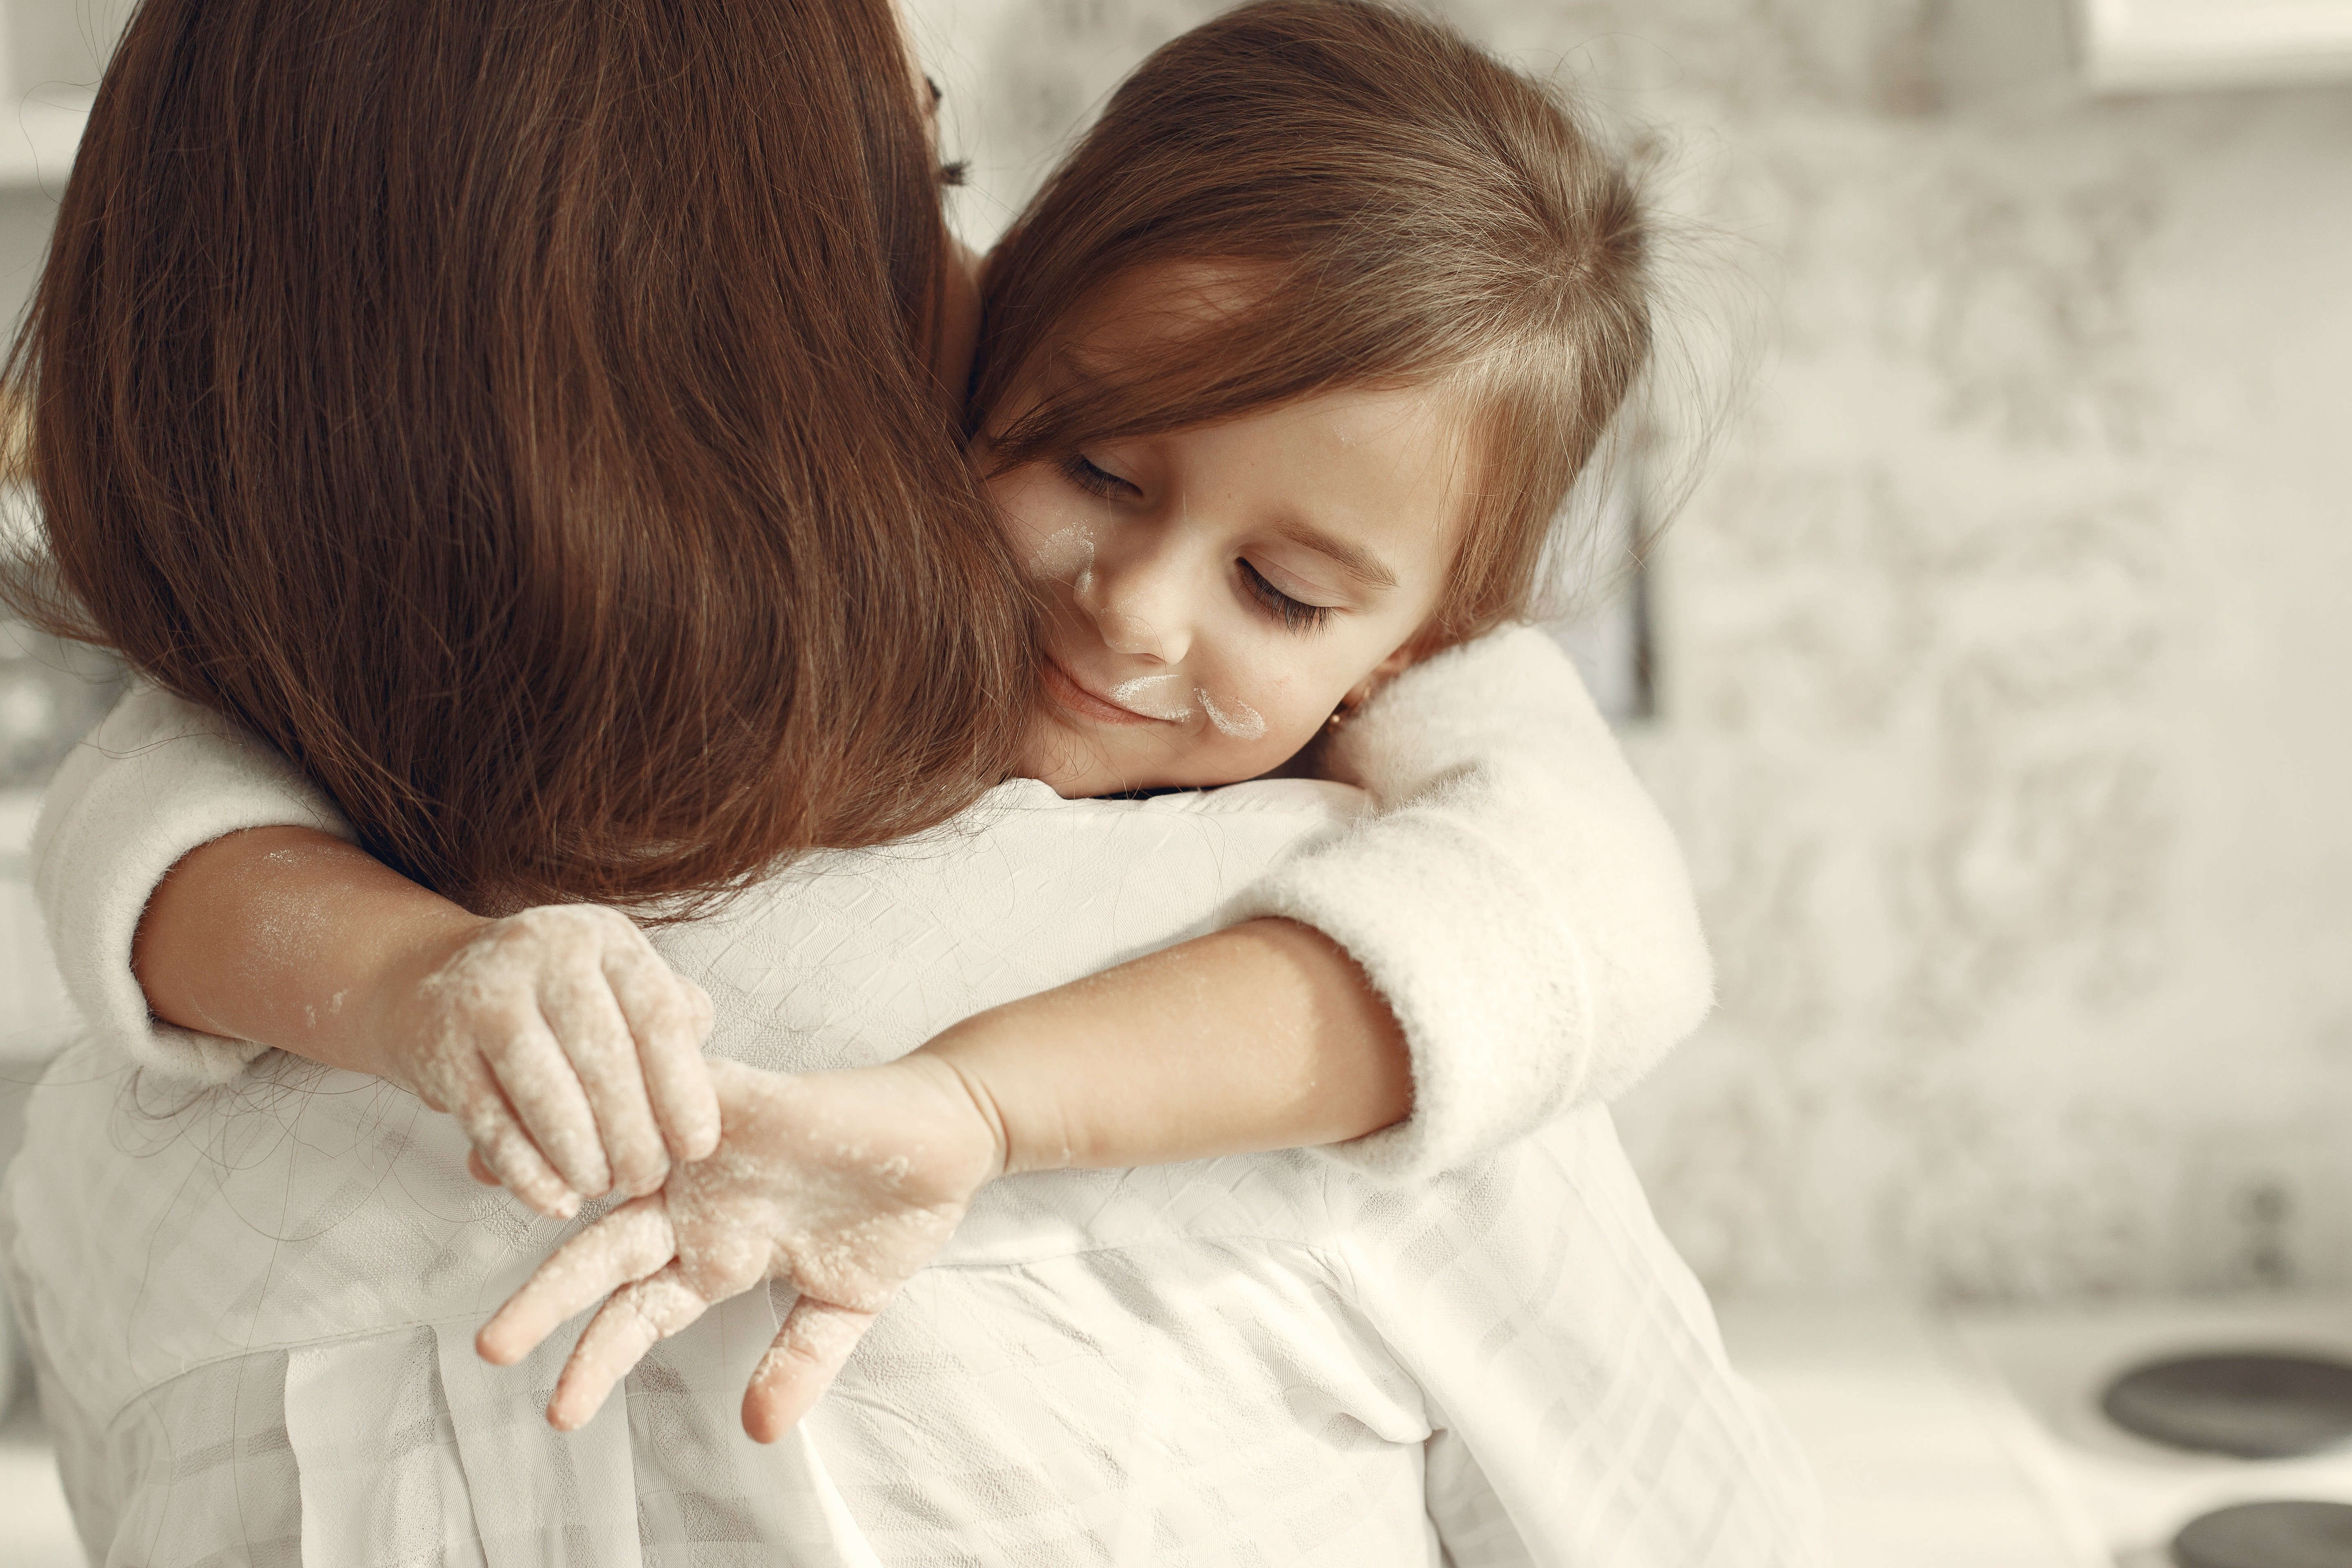 Nachdem Lilli die Wahrheit über ihre Geburt erfahren hatte, sagte sie Karen, dass sie die beste Mutter sei. | Quelle: Pexels